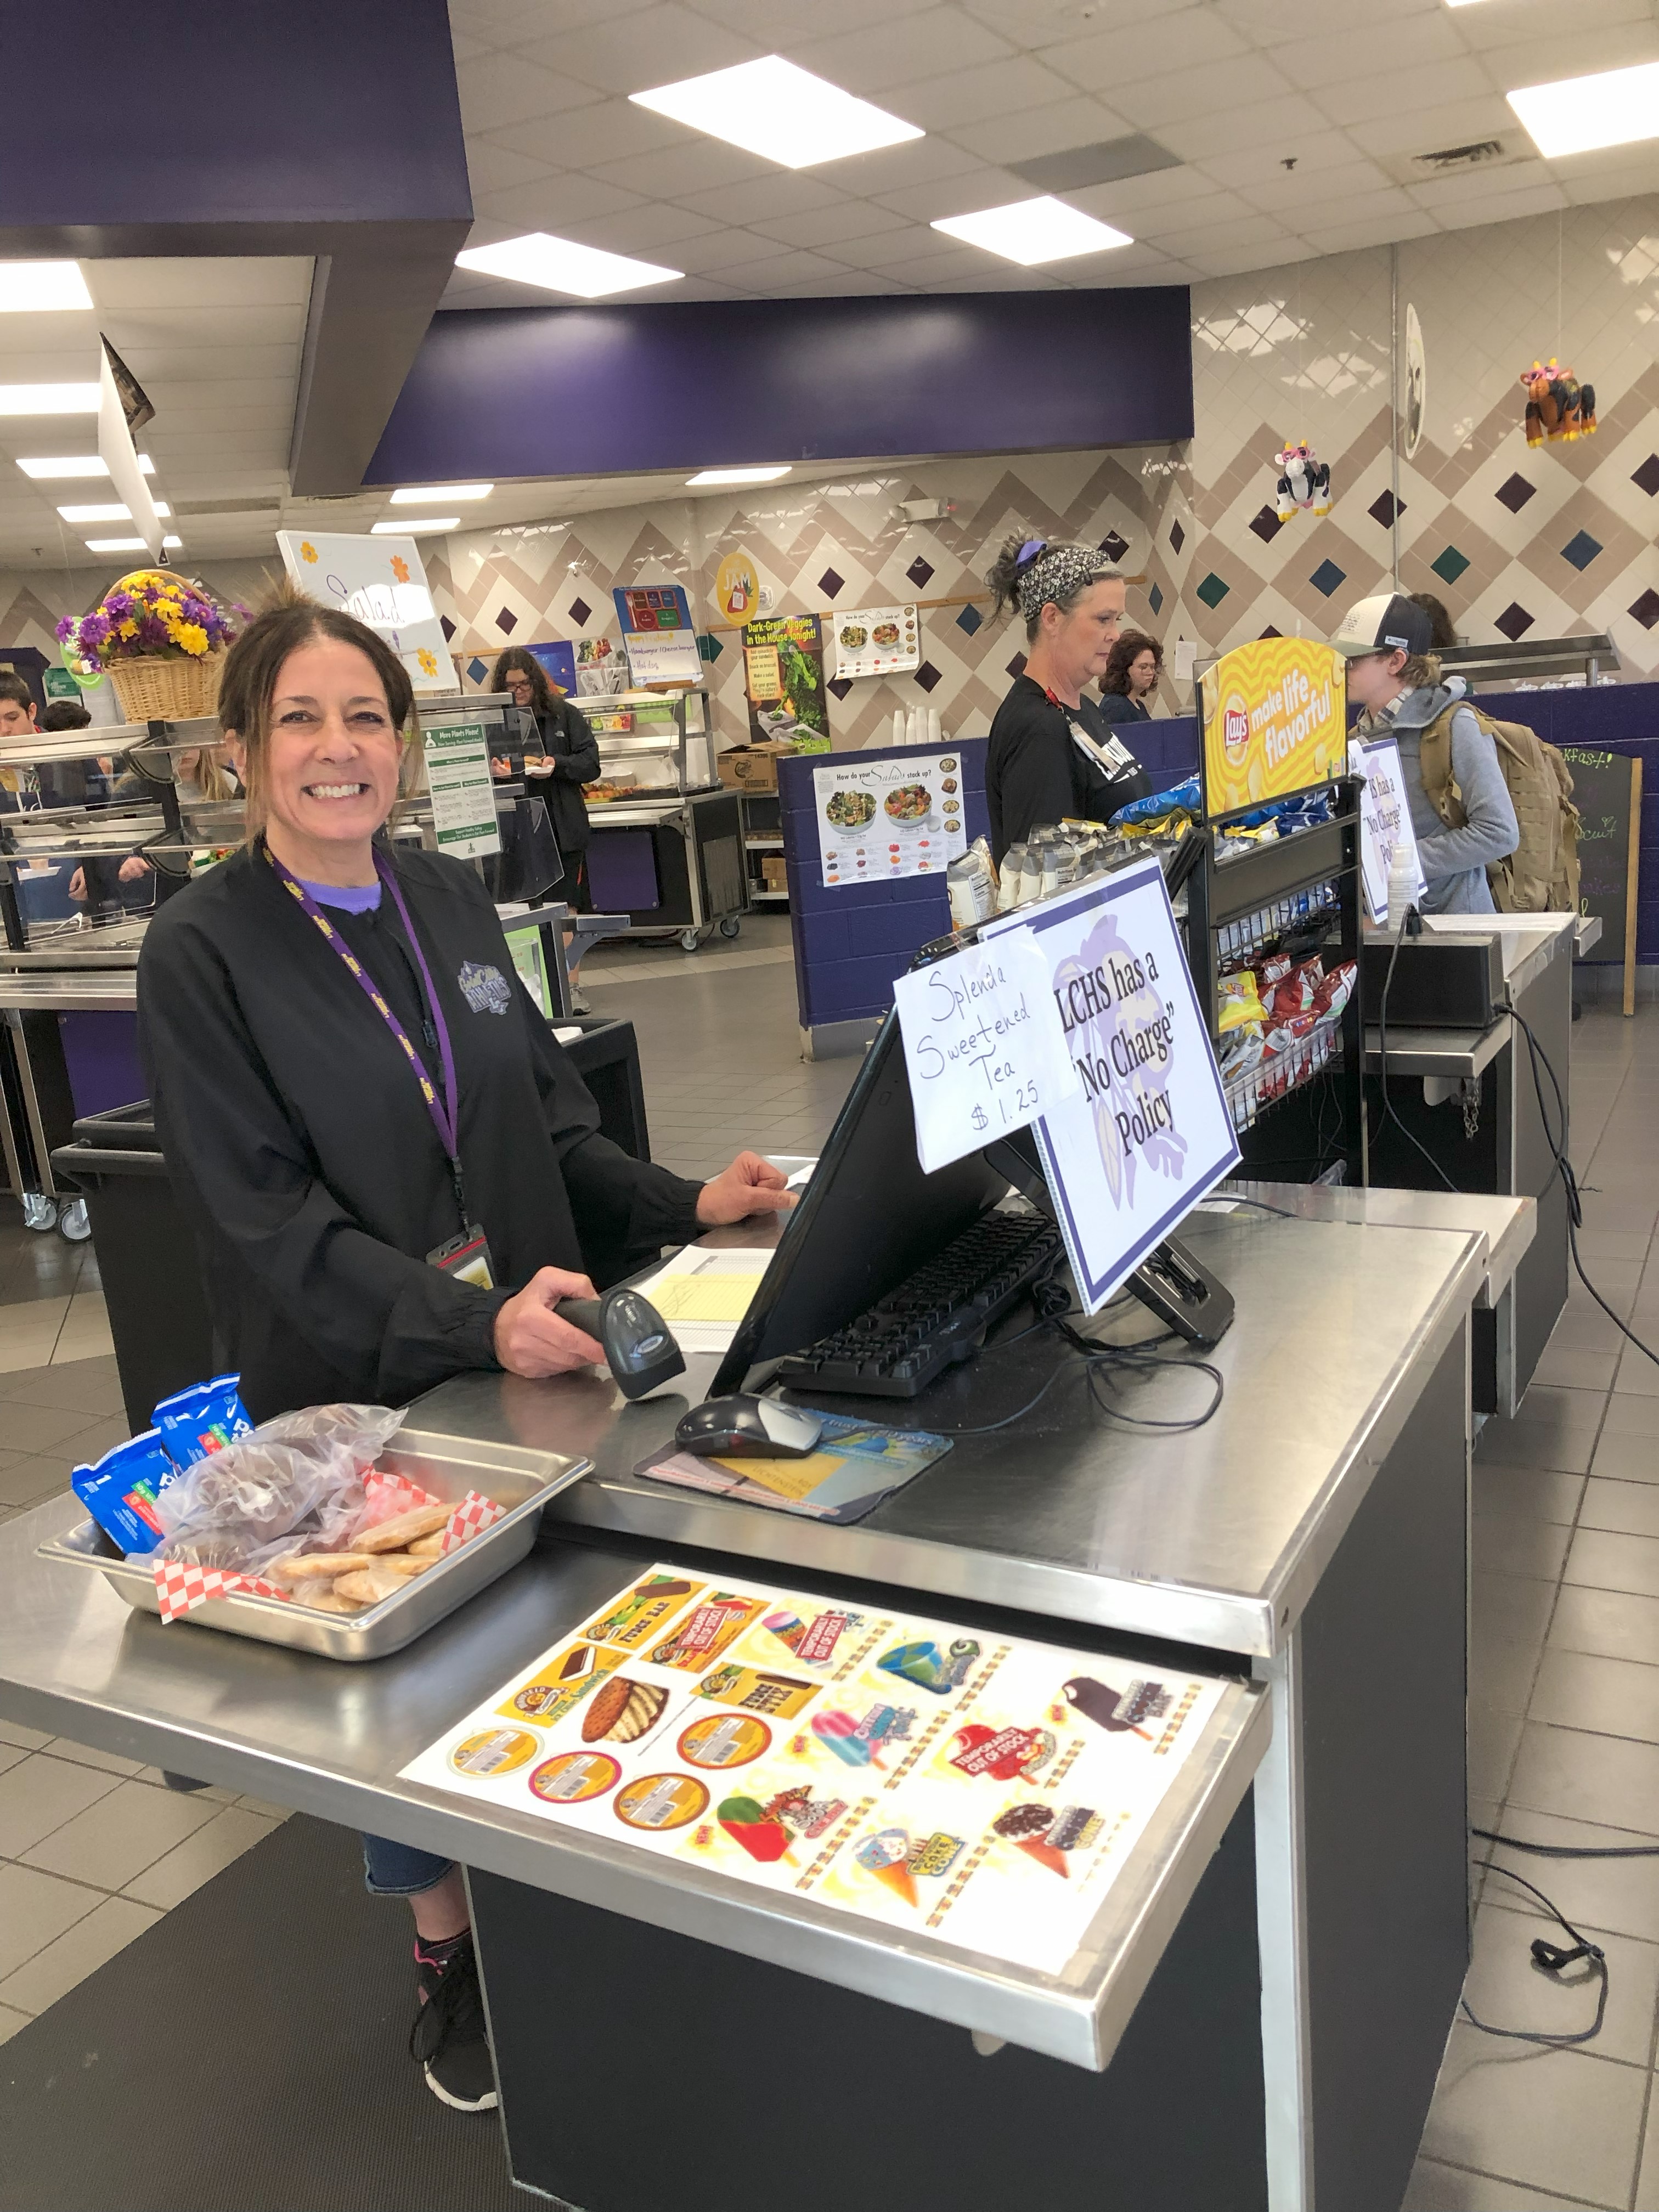 Smiling staffer at LCHS cash register!